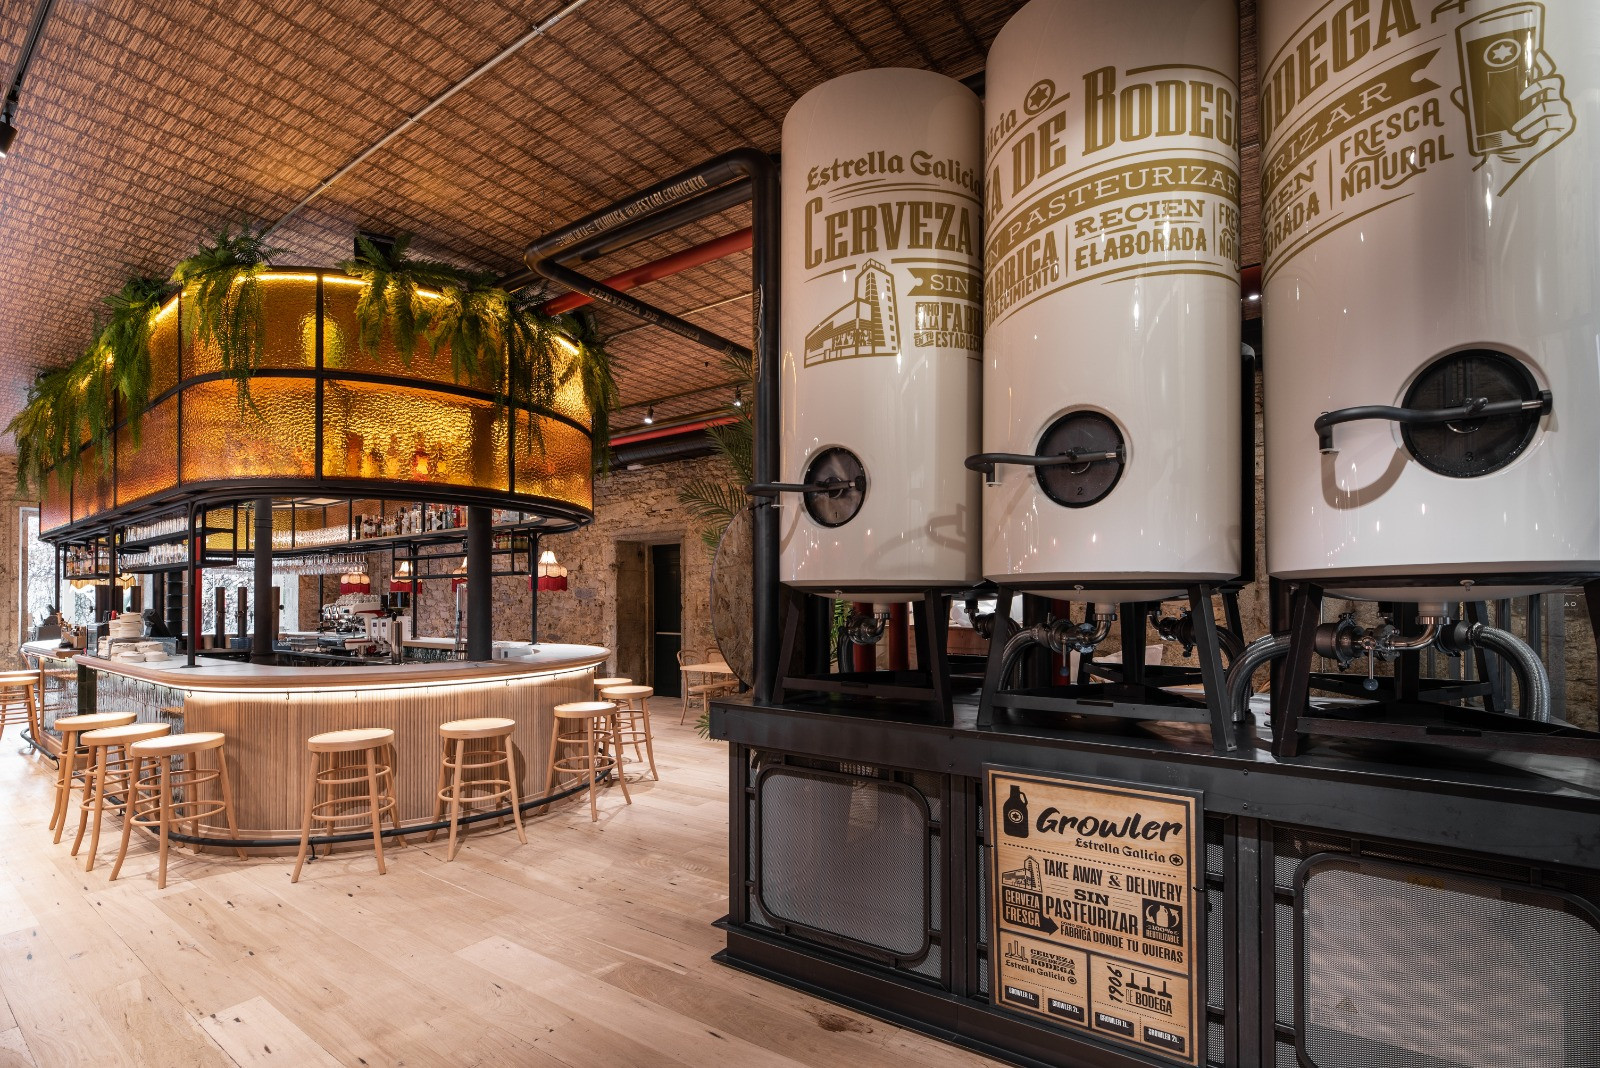 Fábrica de Cacao, la primera “cervecería circular” de Estrella Galicia